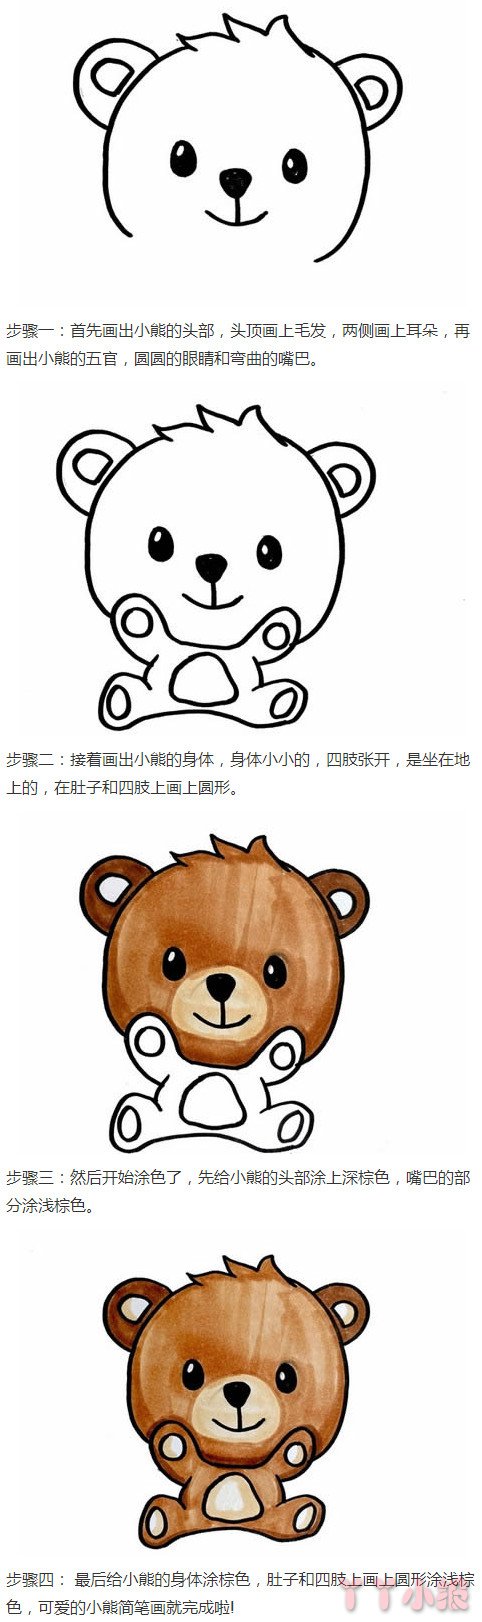 可爱小熊的画法步骤教程涂色简单好看